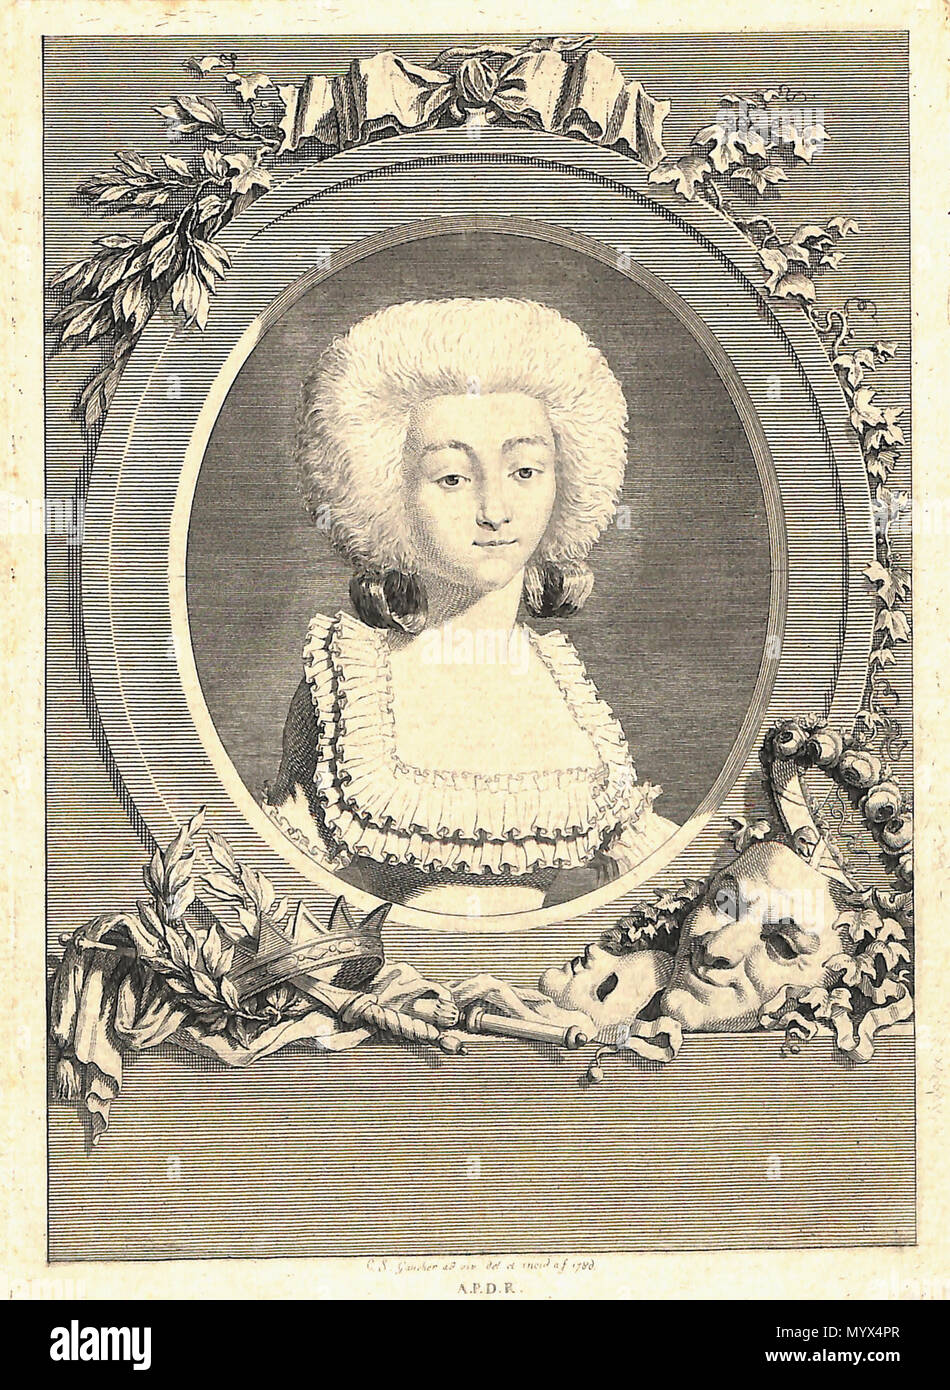 7 Cécile Caroline Charlotte Vanhove (1770-1860) - Portrait original d'après nature gravé en 1786 par Charles Etienne Gaucher Stock Photo